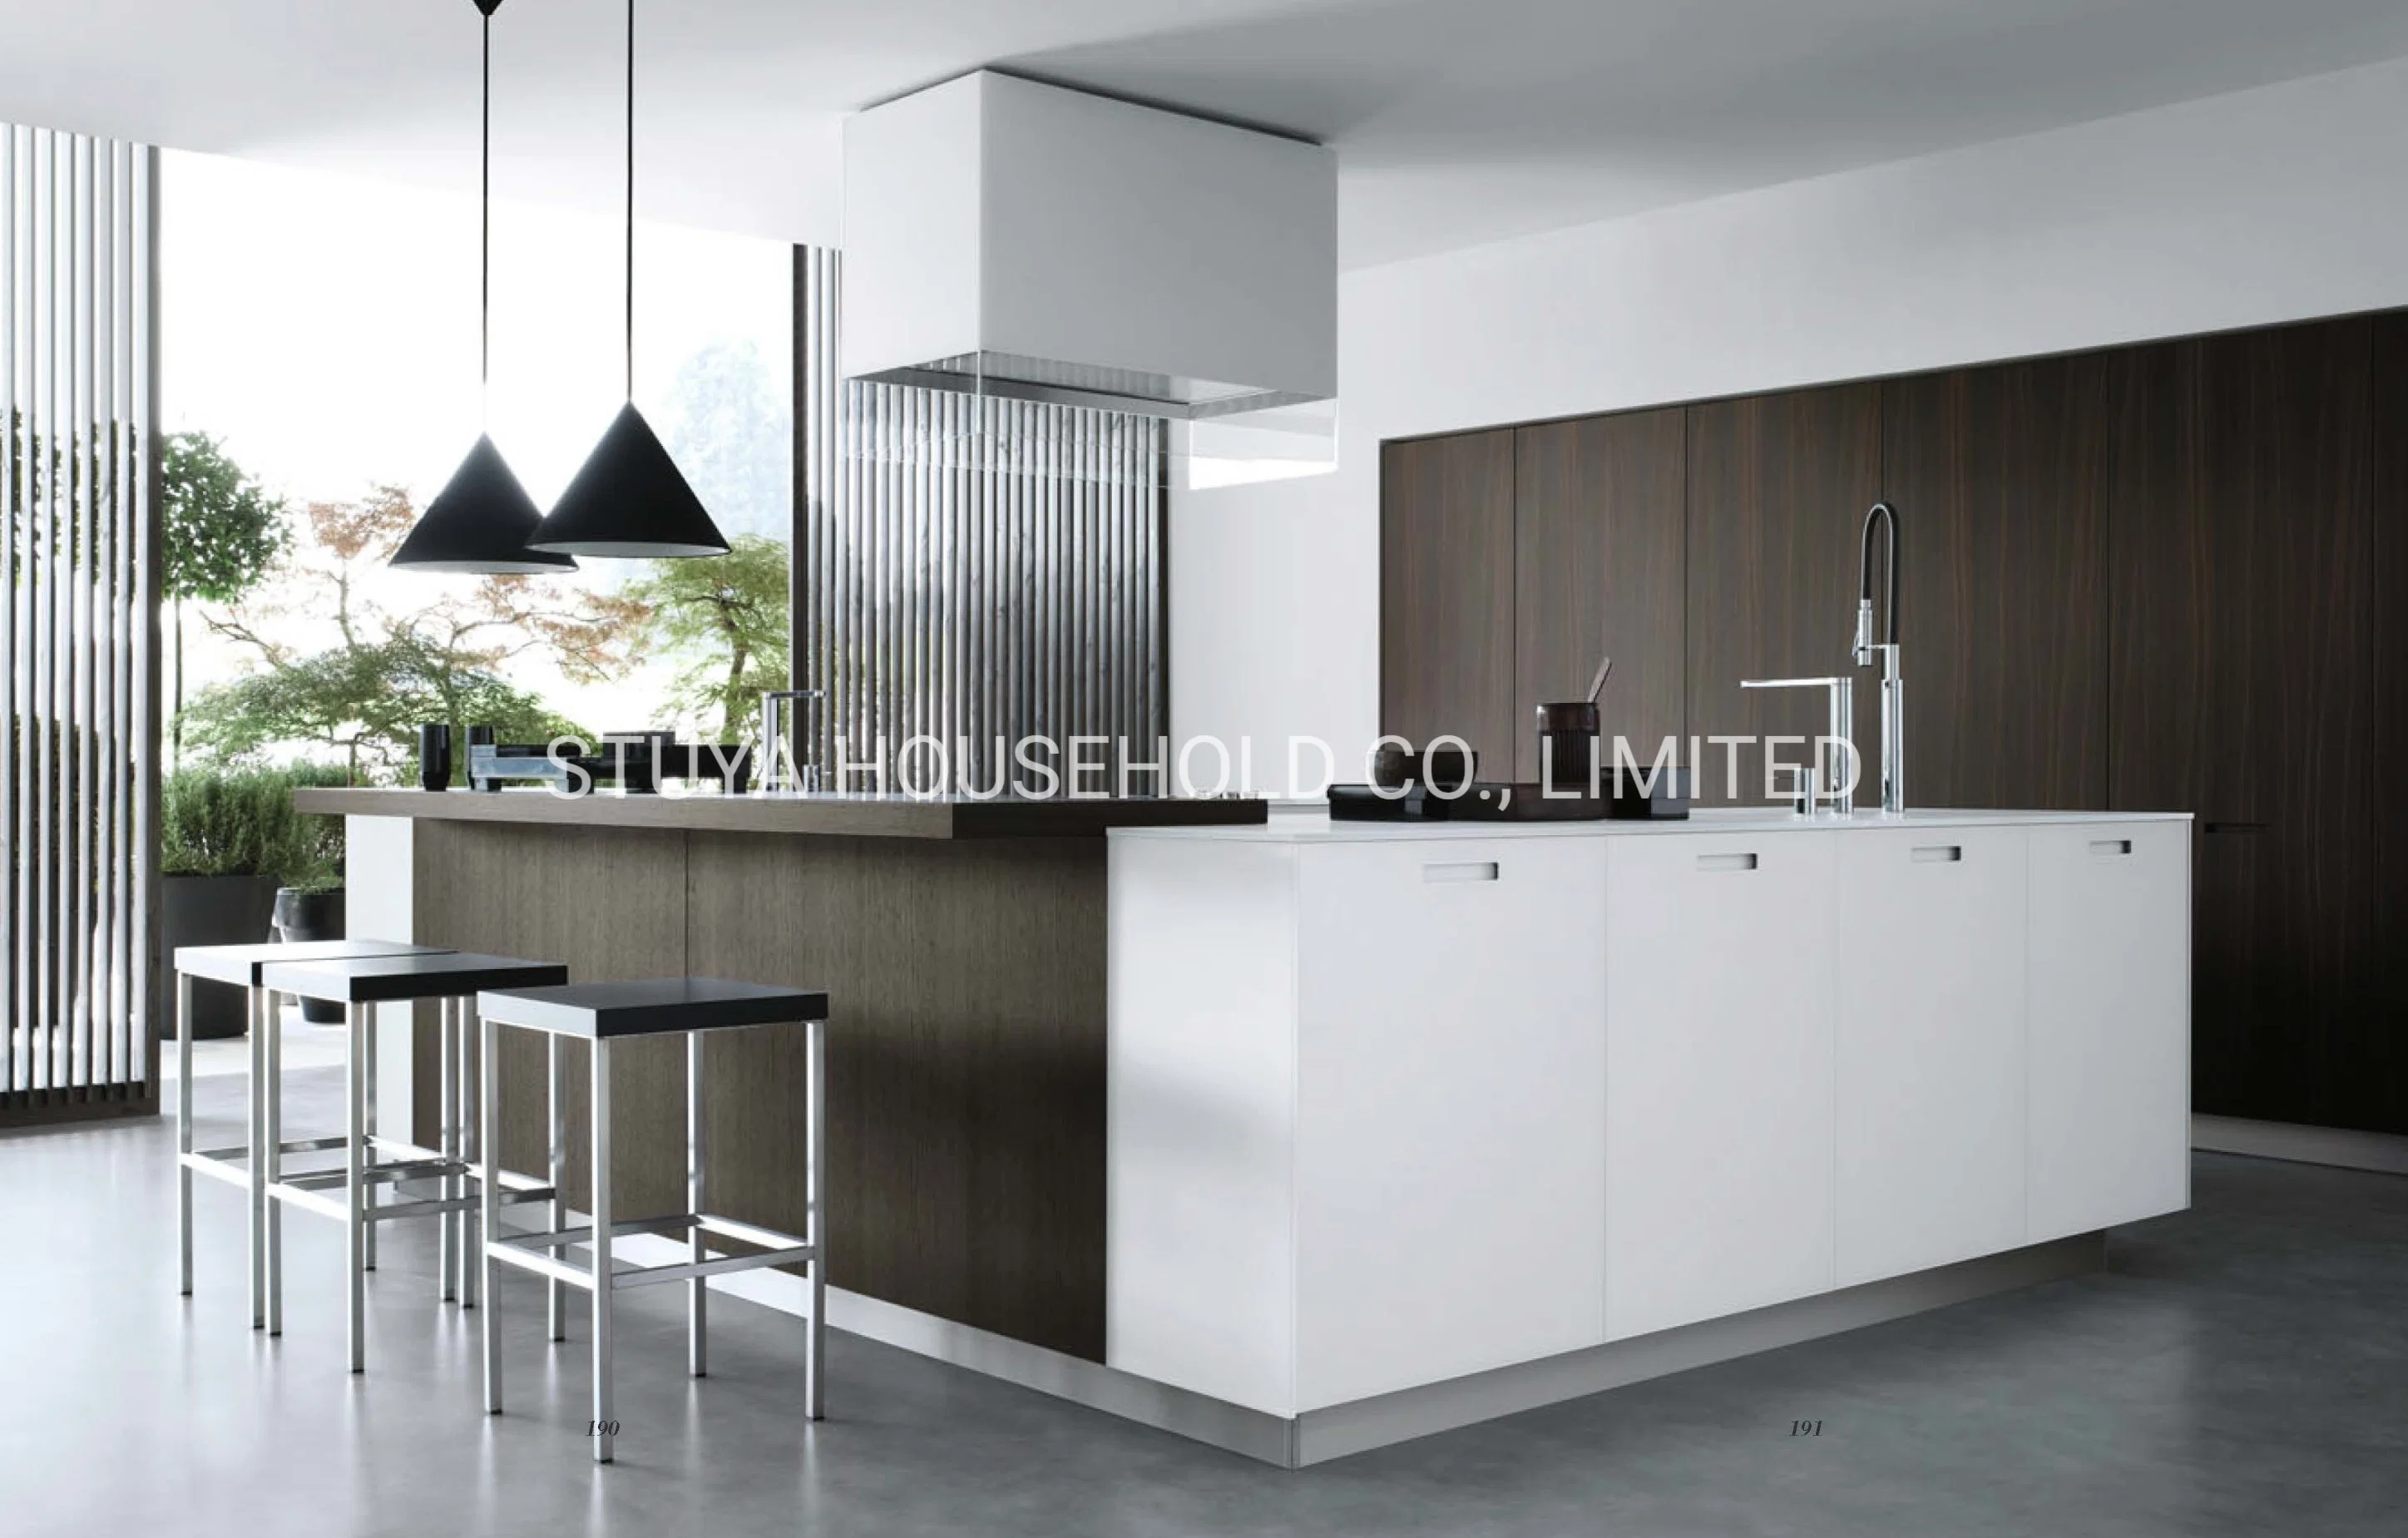 Современный дизайн Мебель Фошань Открытый стиль Кухня столовая Главная Кухонный шкаф для мебели